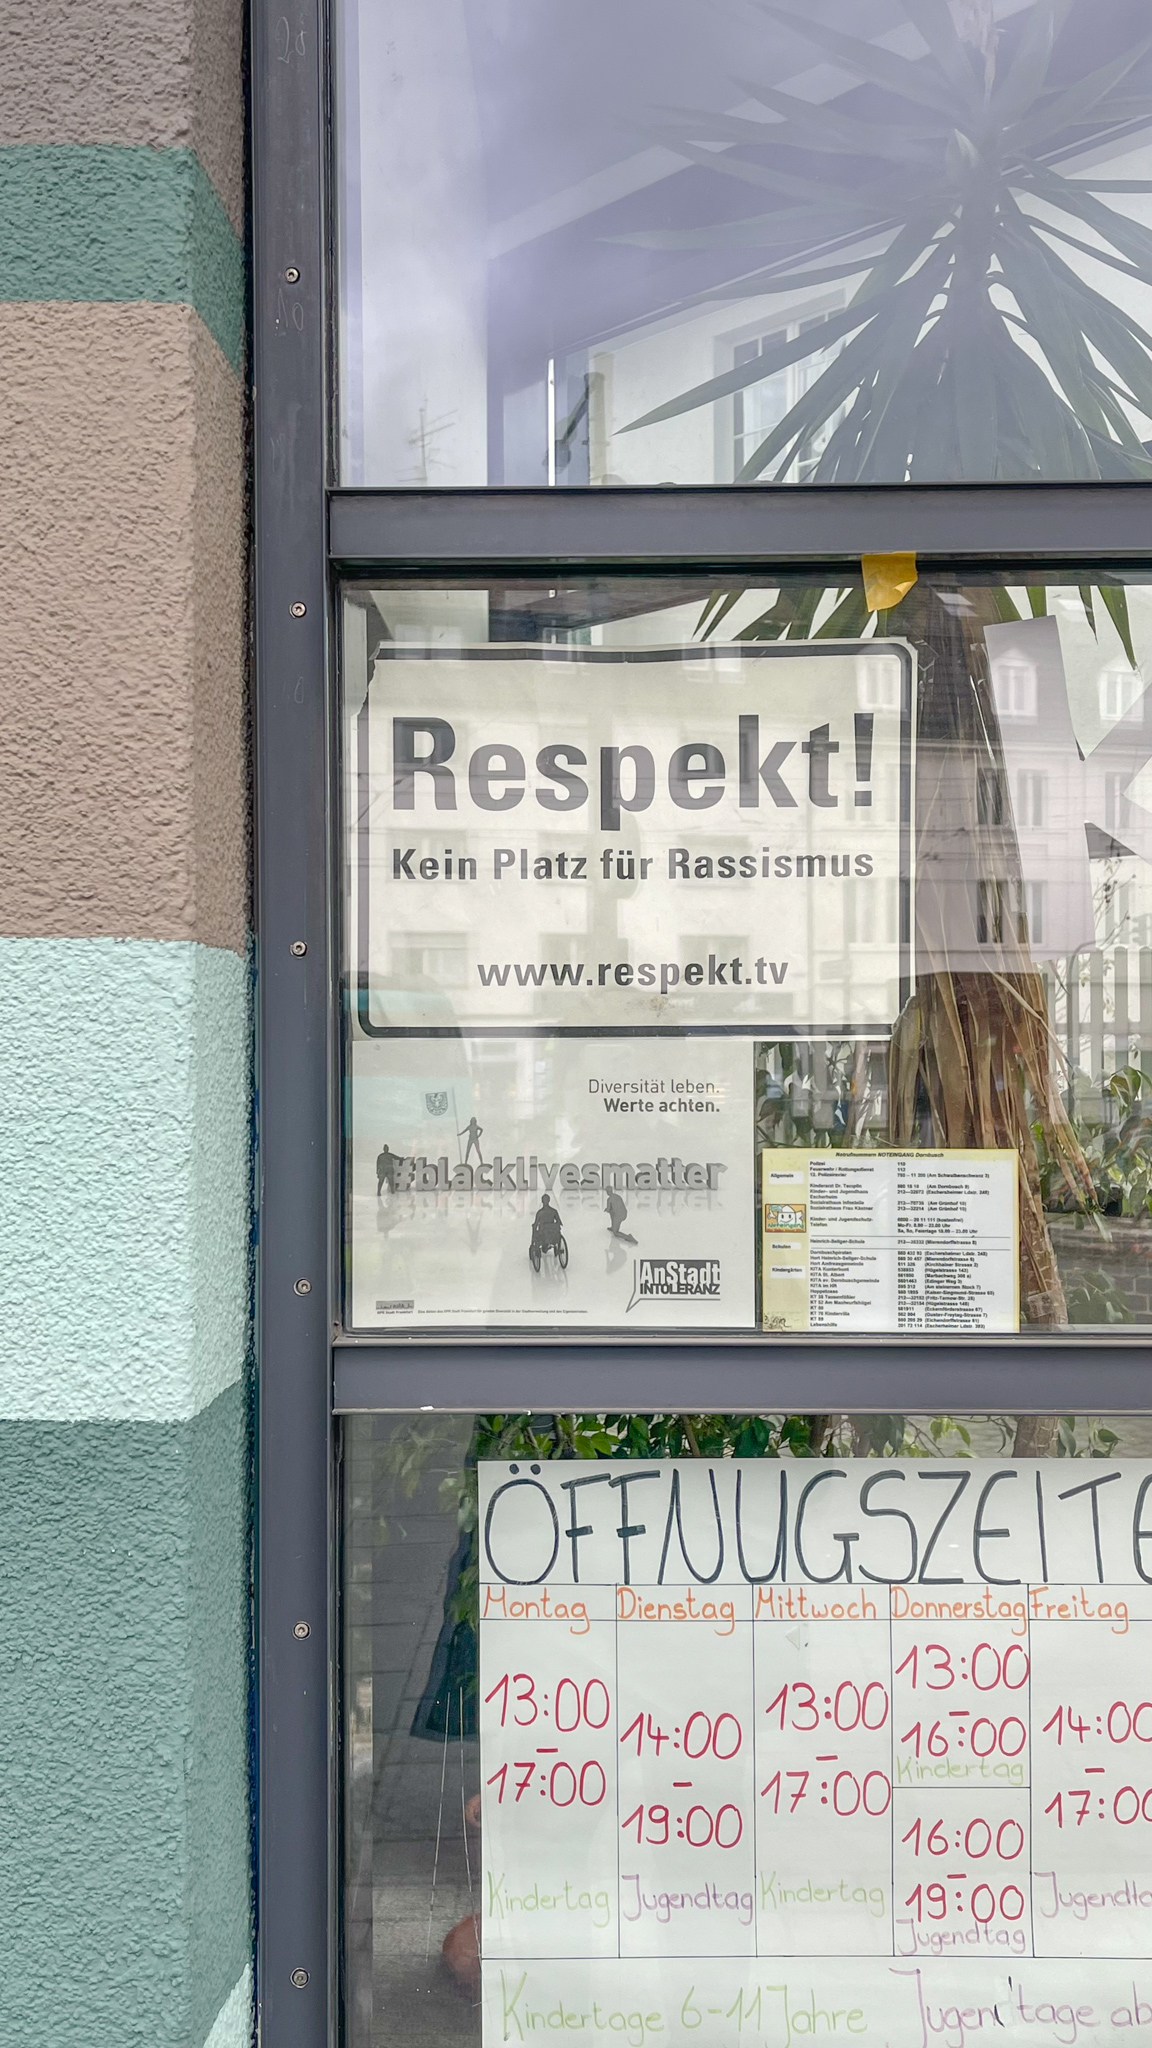 길을 걷다가 반가운 문구가 보여서 찍었다. “인종차별이 설 자리를 없게 하자(Kein Platz für Rassismus)”